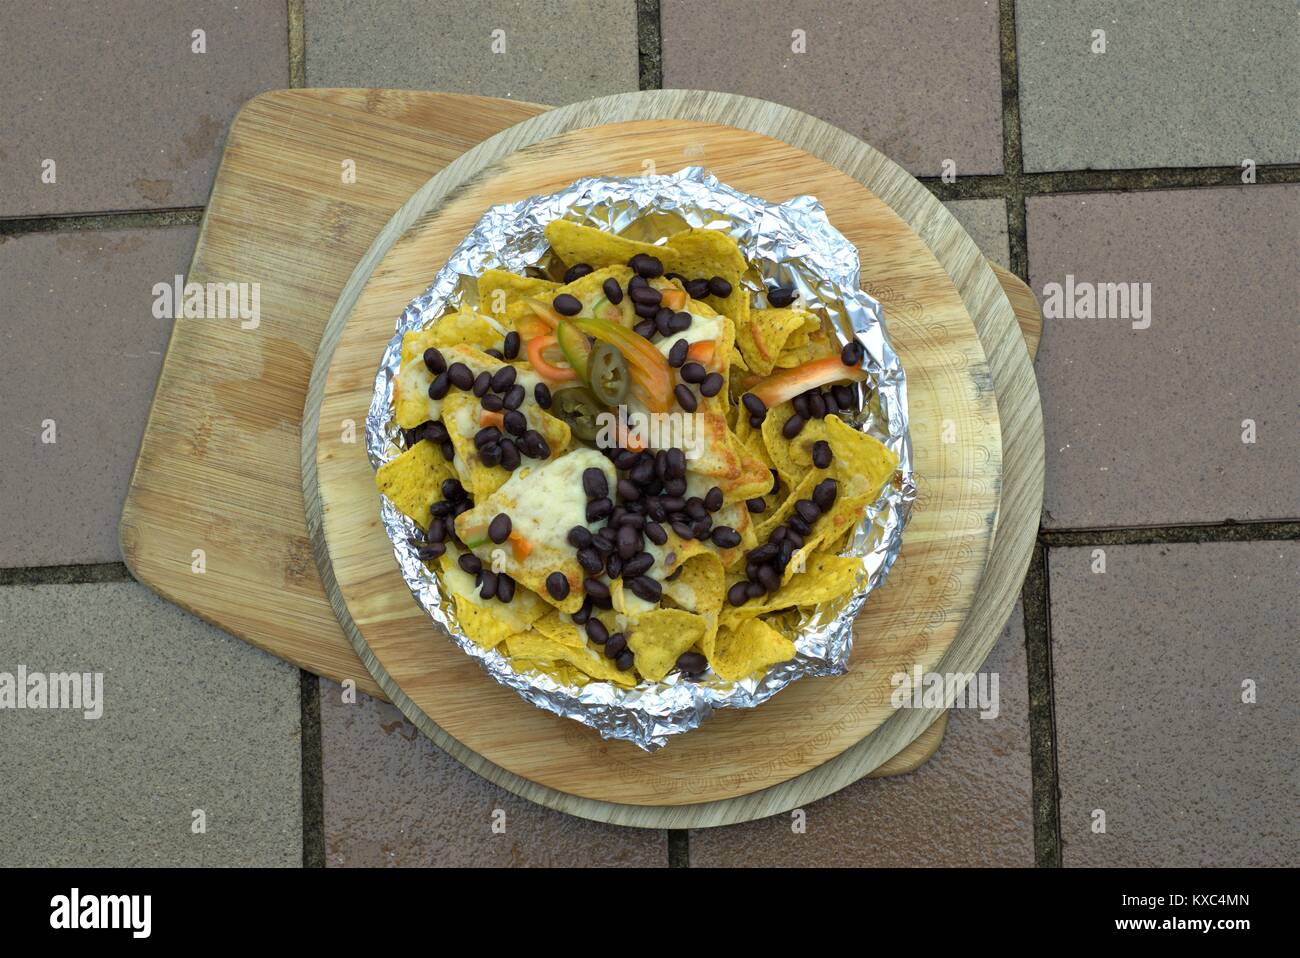 Mexikanische Nachos oder Lateinamerikanischen - in der Nähe der schwarzen Bohnen jalapeno Pfeffer auf Mais Tortilla Chips mit geschmolzenem Käse auf hölzernen Platte. Stockfoto